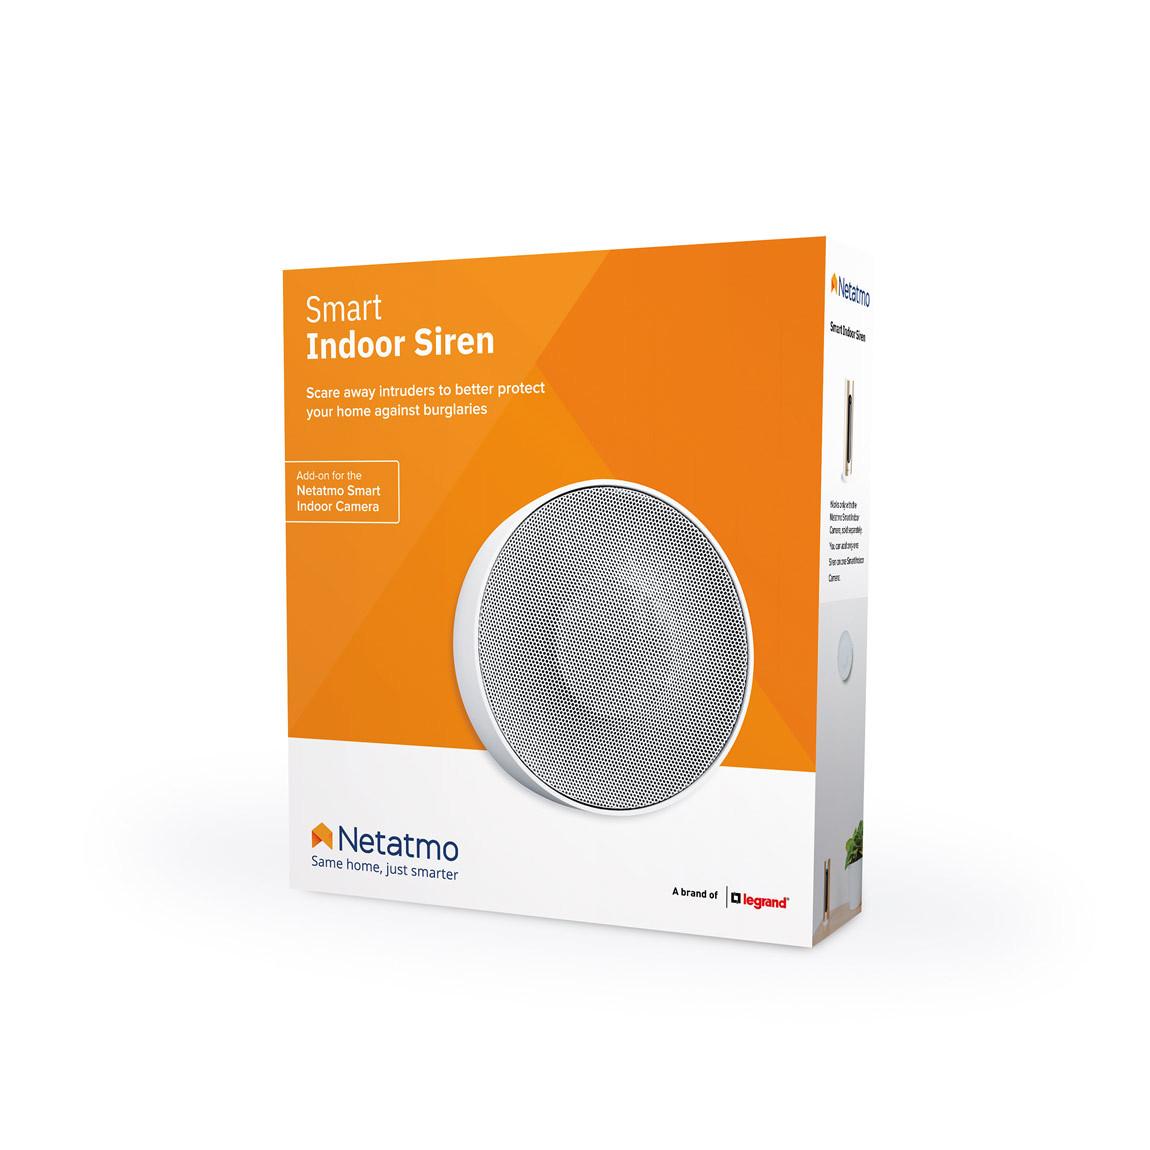 Netatmo Smarte Innen-Alarmsirene Verpackung